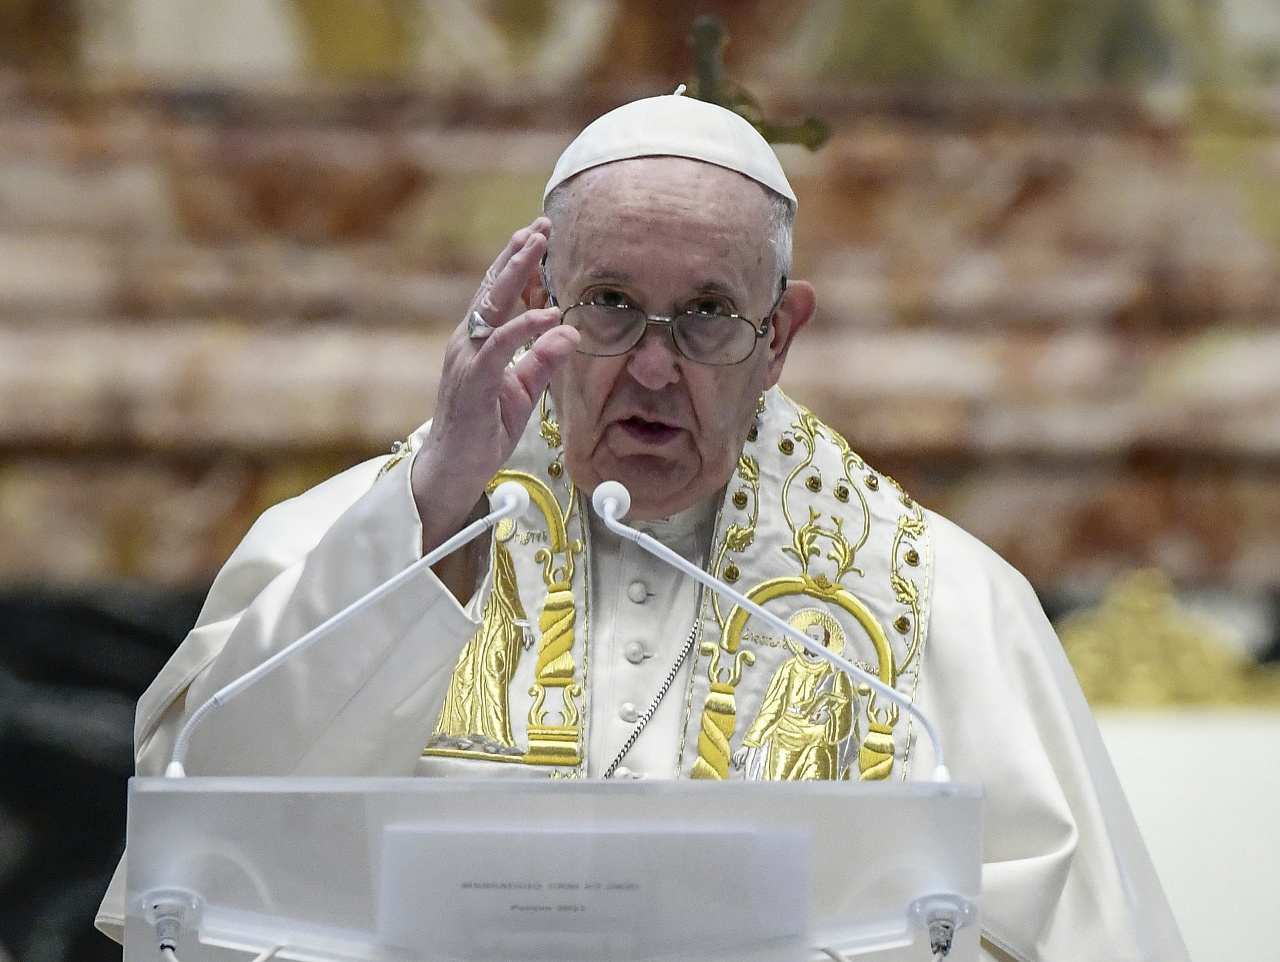 Pápež udeľuje tradičné veľkonočné požehnanie Mestu a svetu (Urbi et Orbi)